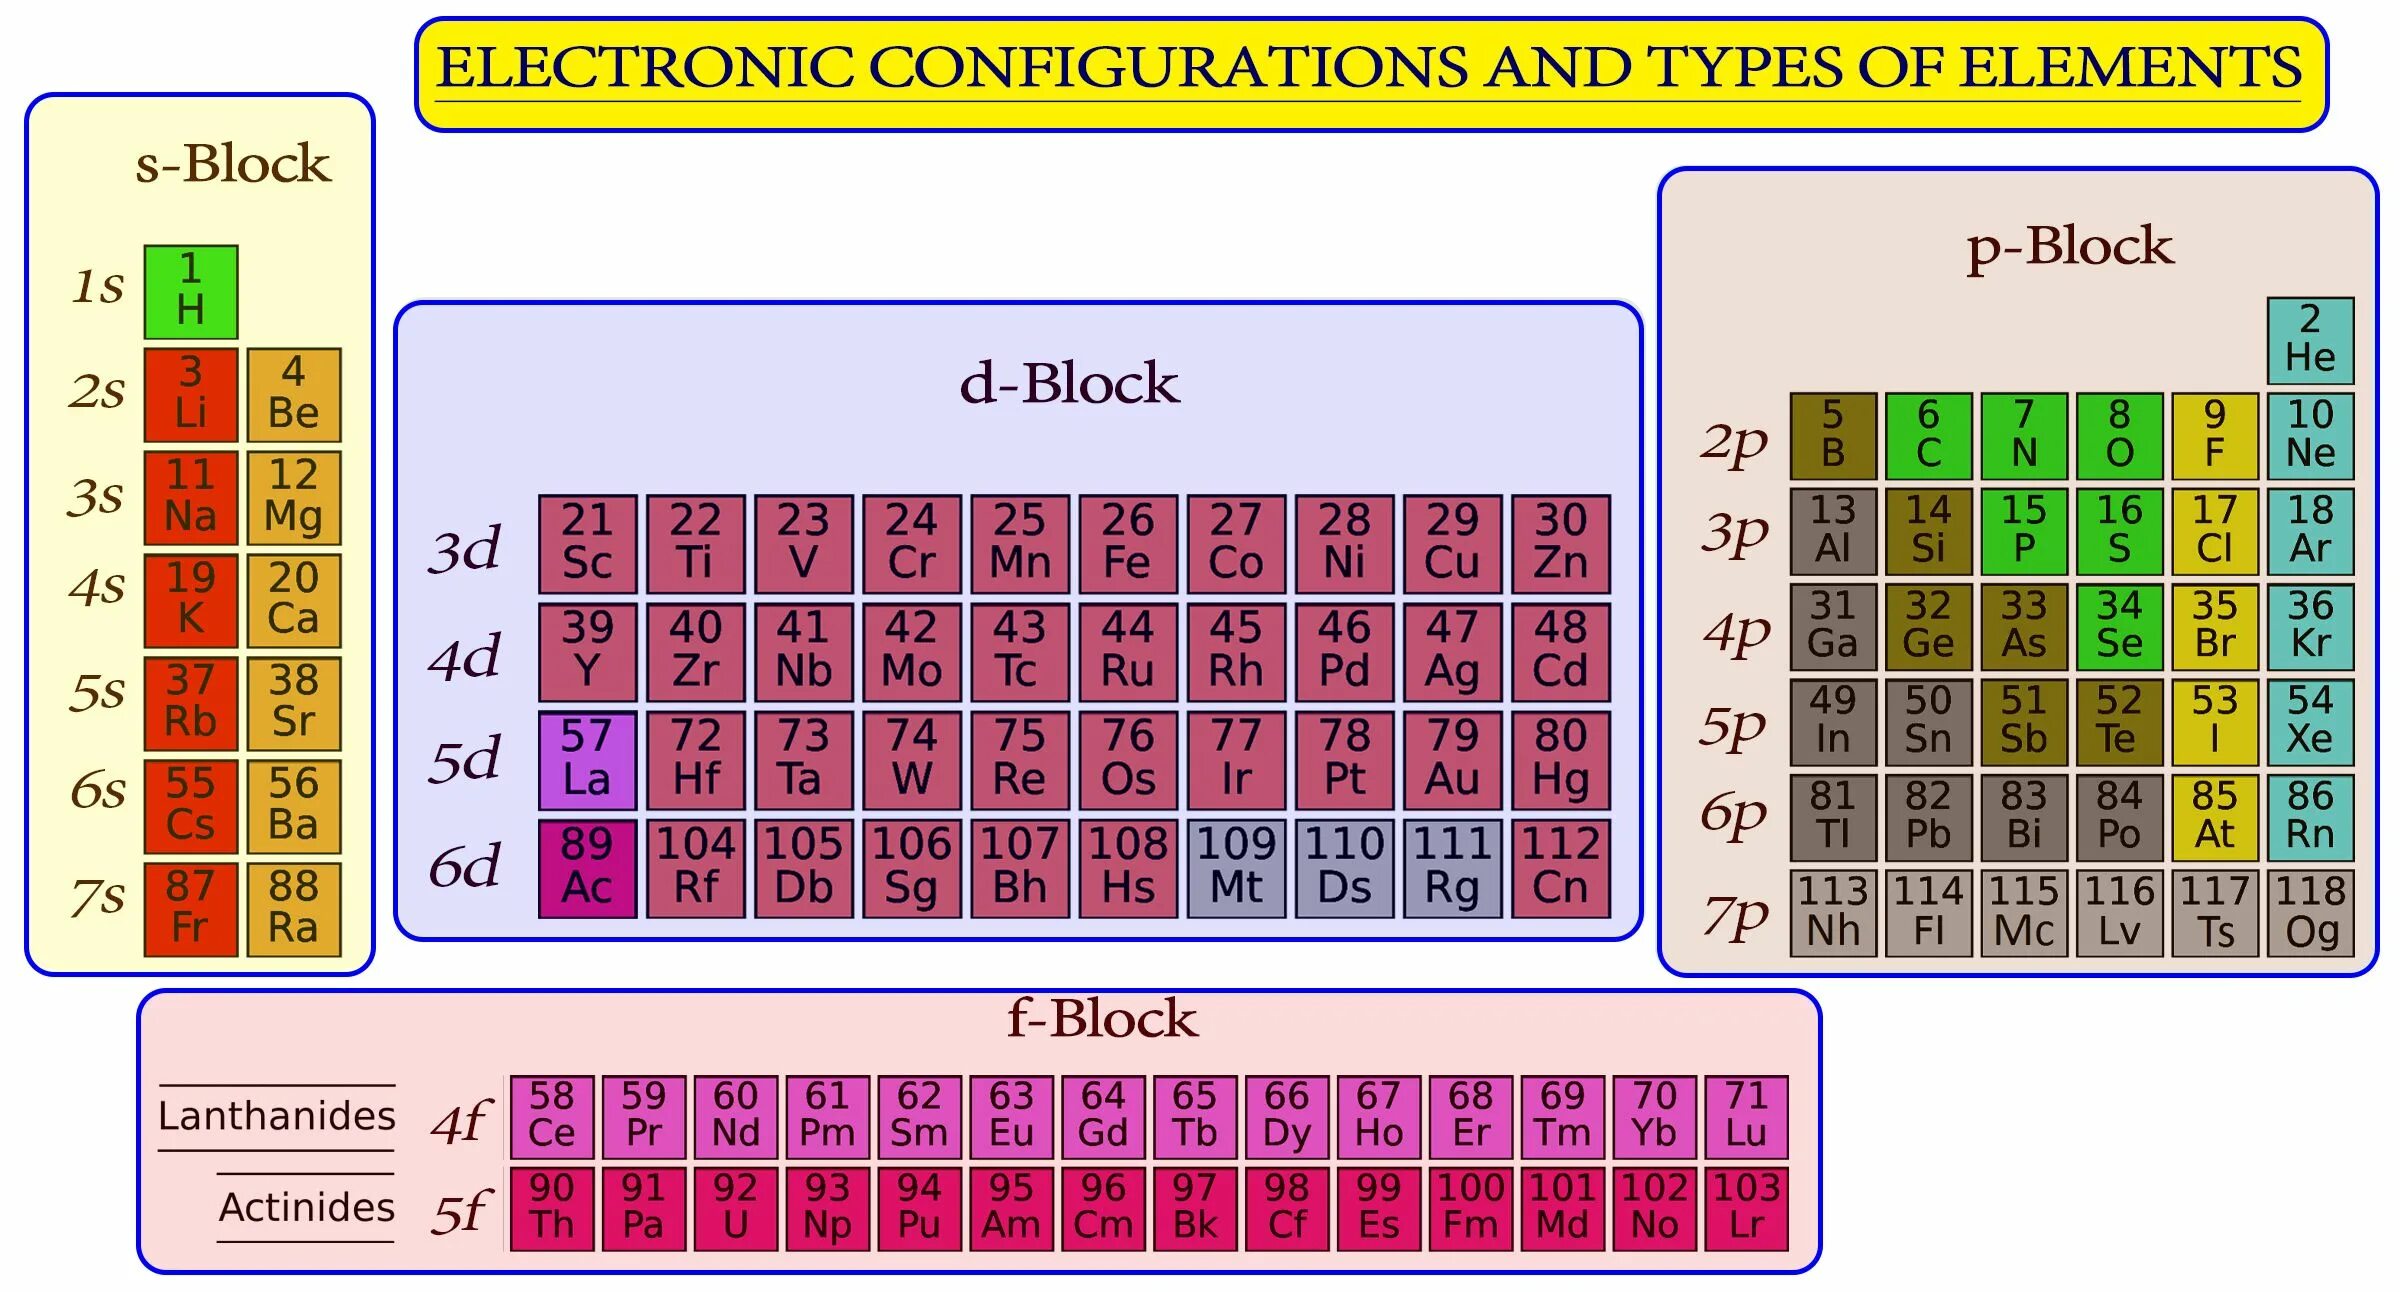 D-Block elements. S P D F блоки. F Block elements. Как выбрать элемент с class = "Block"?. P elements